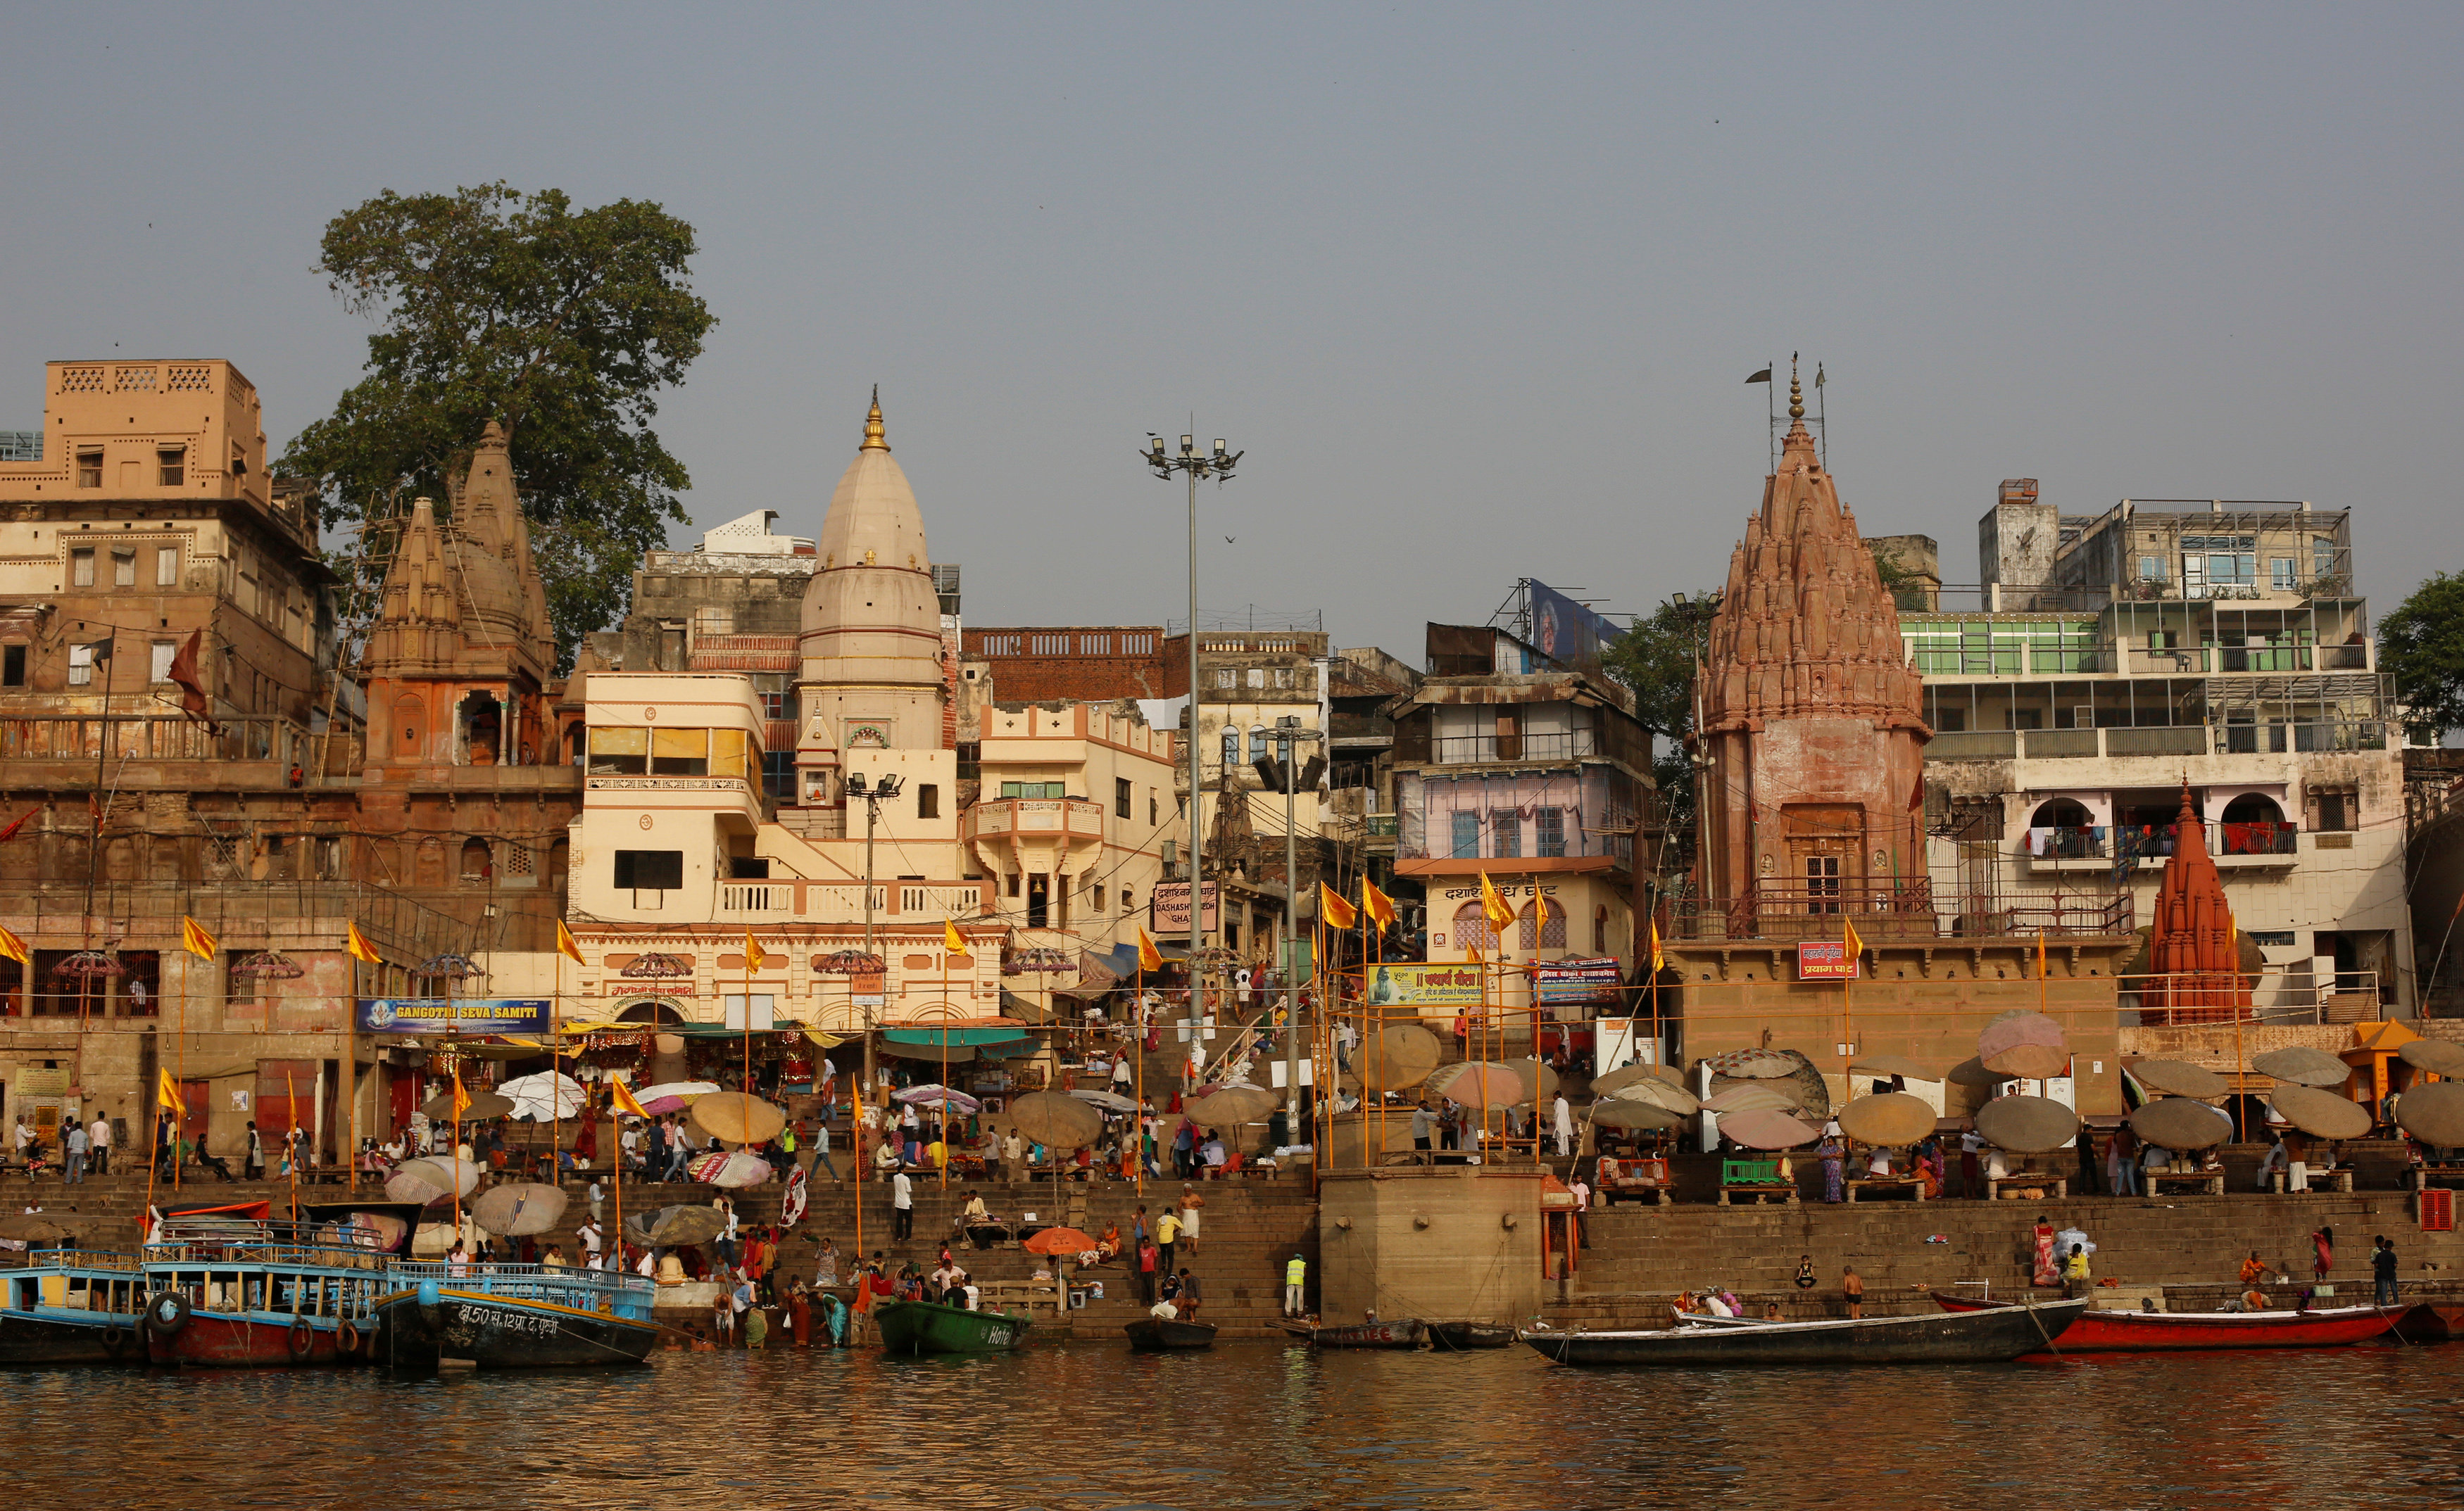 India's holy river Ganga